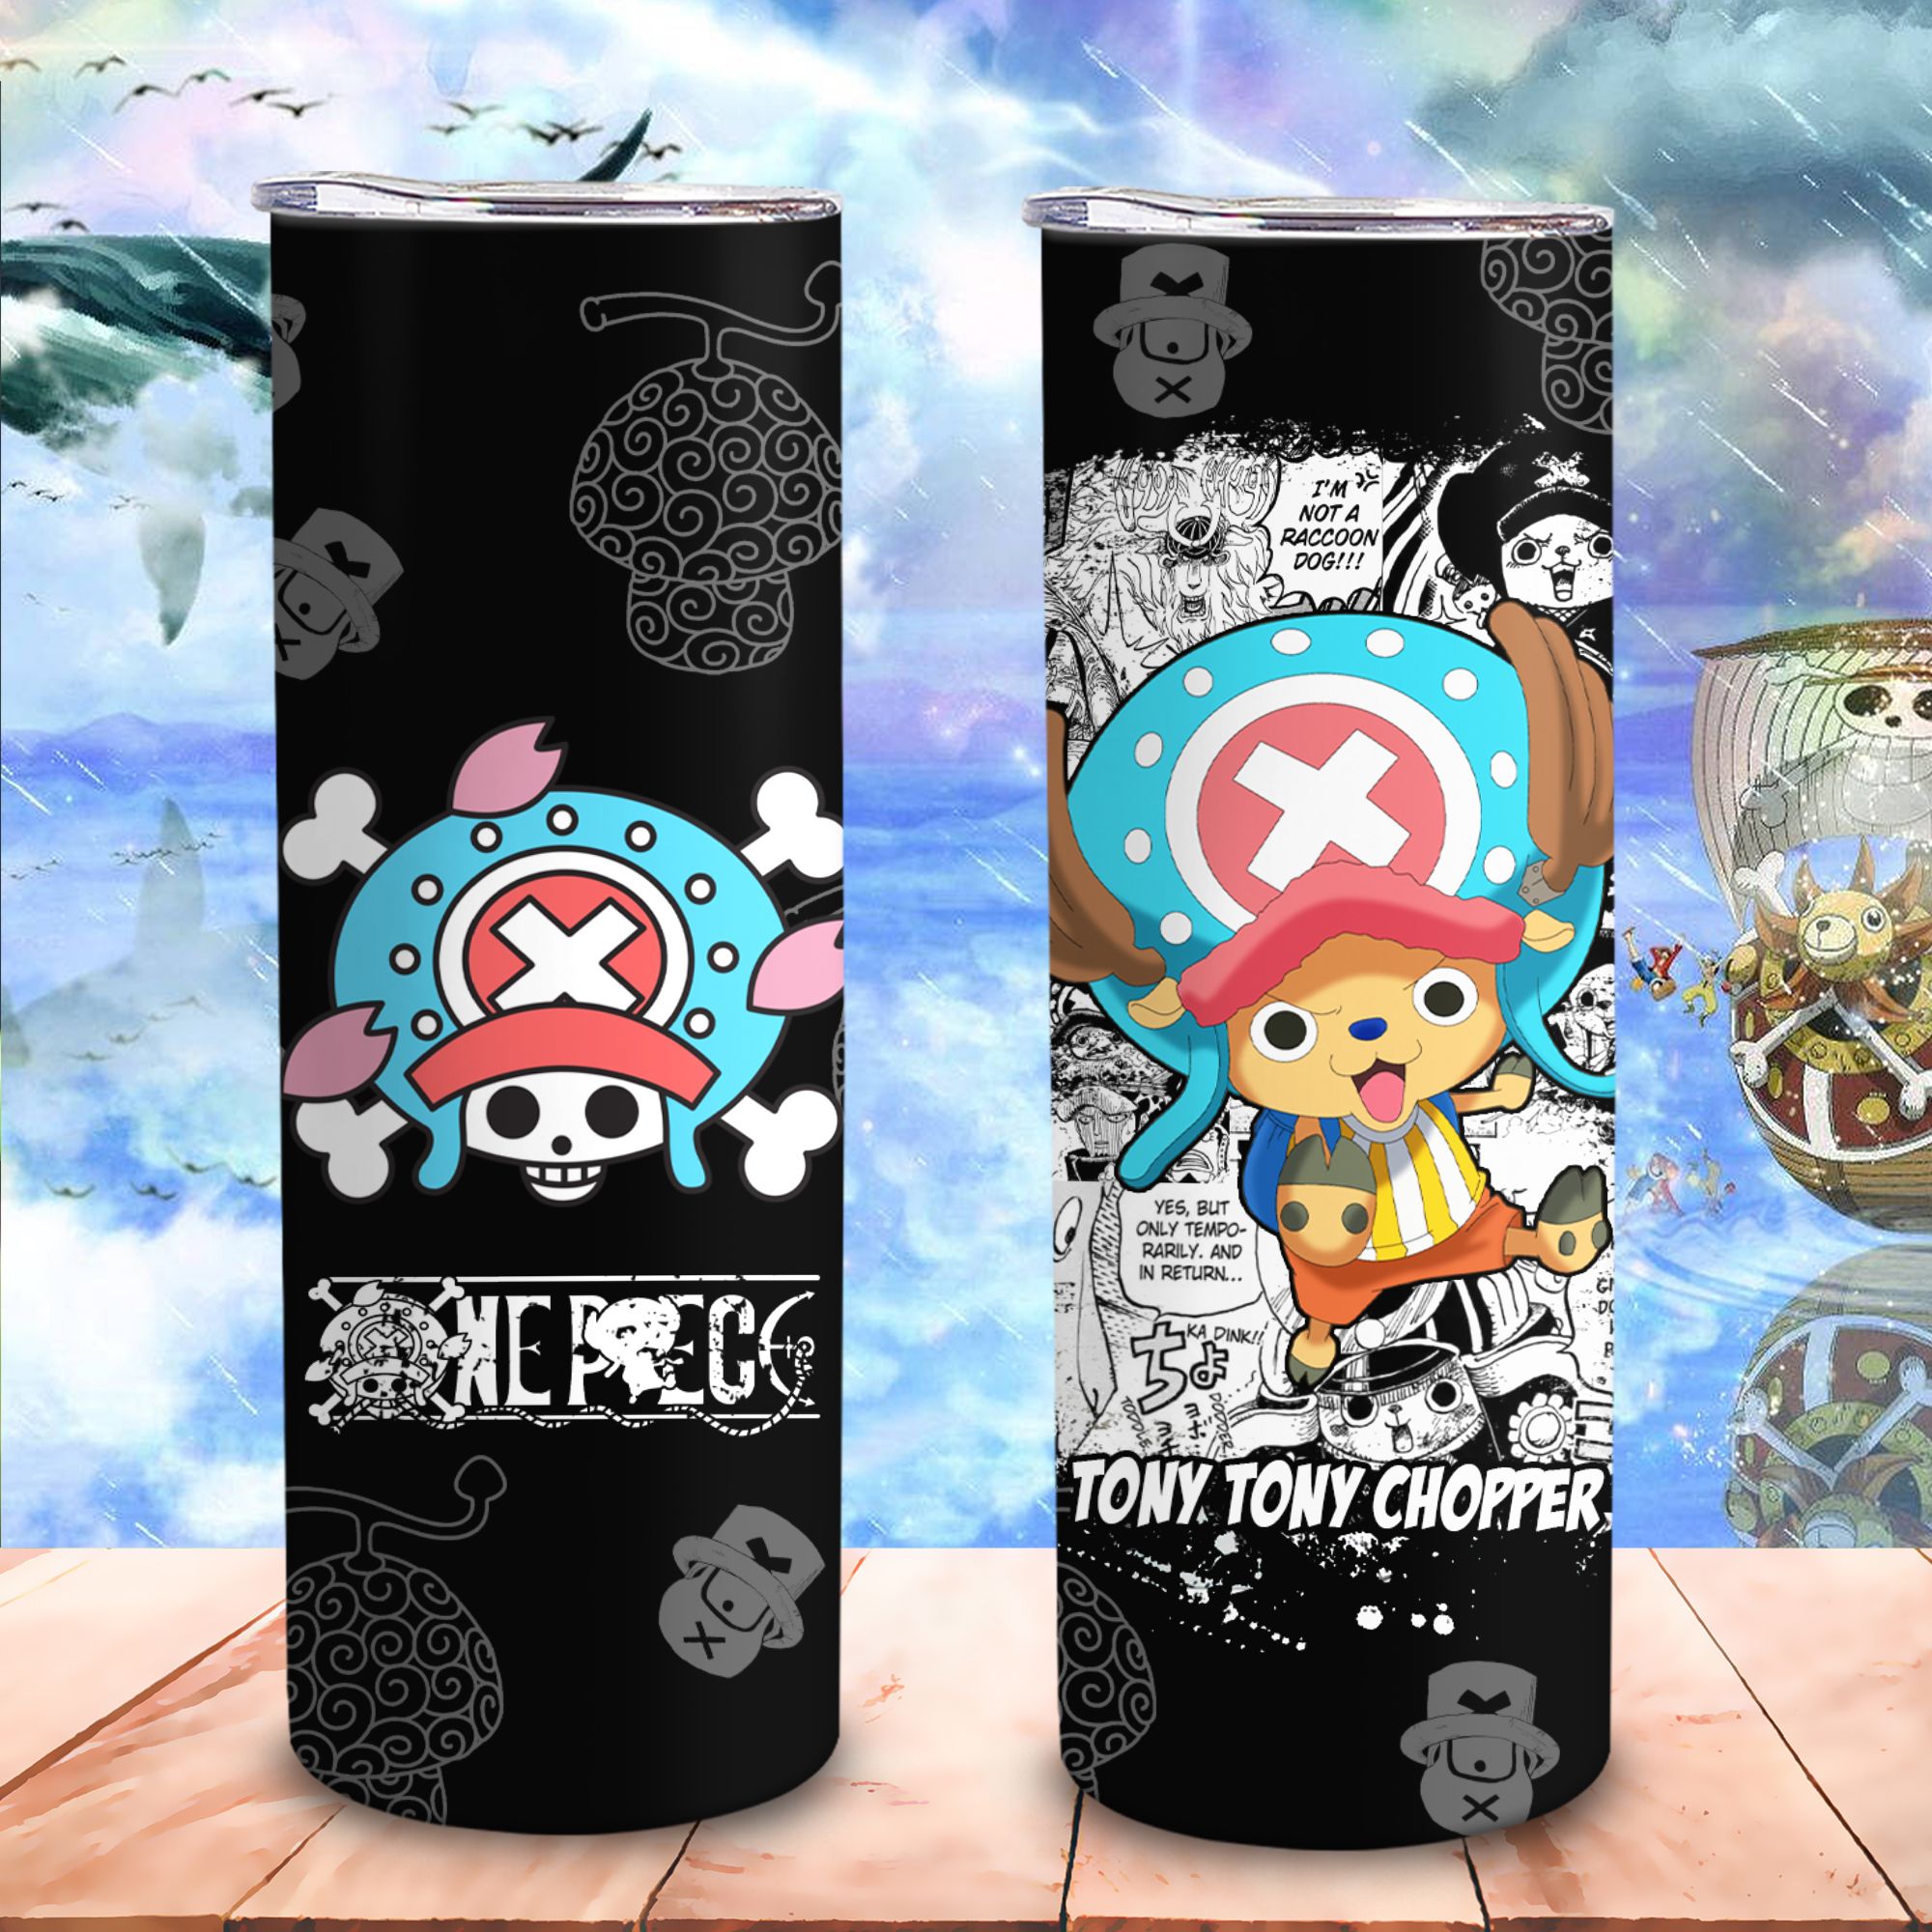  One Piece Đảo Hải Tặc Các Thành Viên  Go Drink Anime Skinny 600ml In Tên, Hình Ảnh Theo Yêu Cầu 